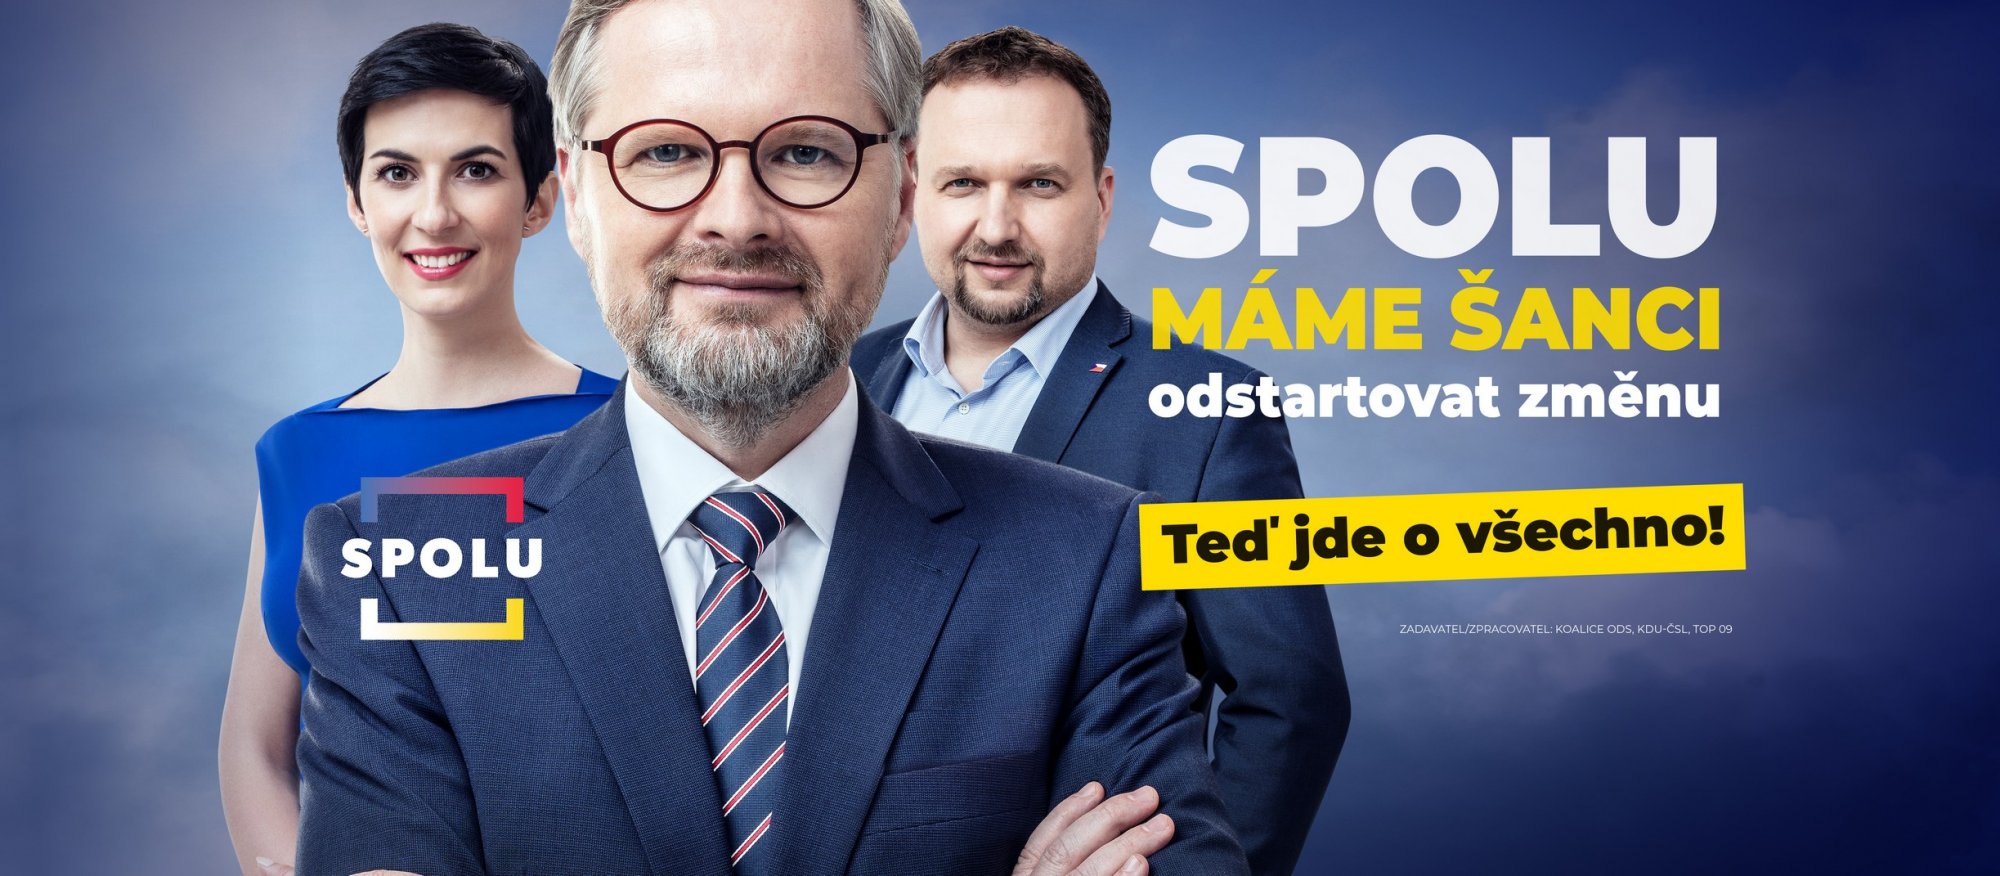 SPOLU zahájila horkou fázi kampaně: Máme jedinečnou šanci změnit Českou republiku k lepšímu. Teď jde o všechno